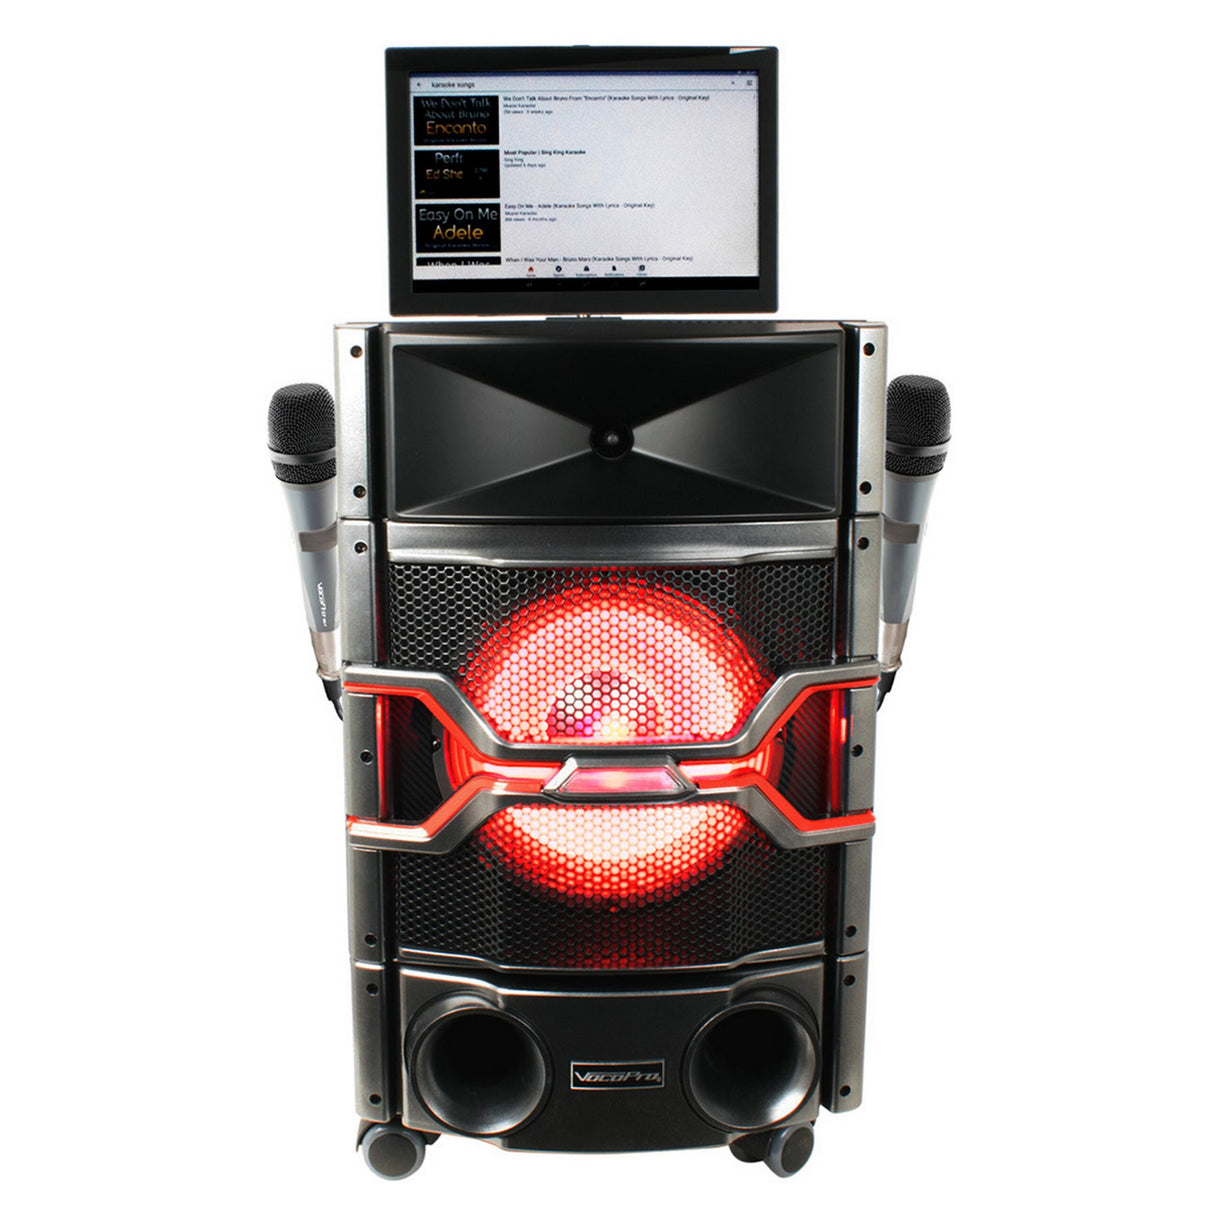 VocoPro WiFi-Rocker 120W Wi-Fi Karaoke System with 14-Inch Touchscreen